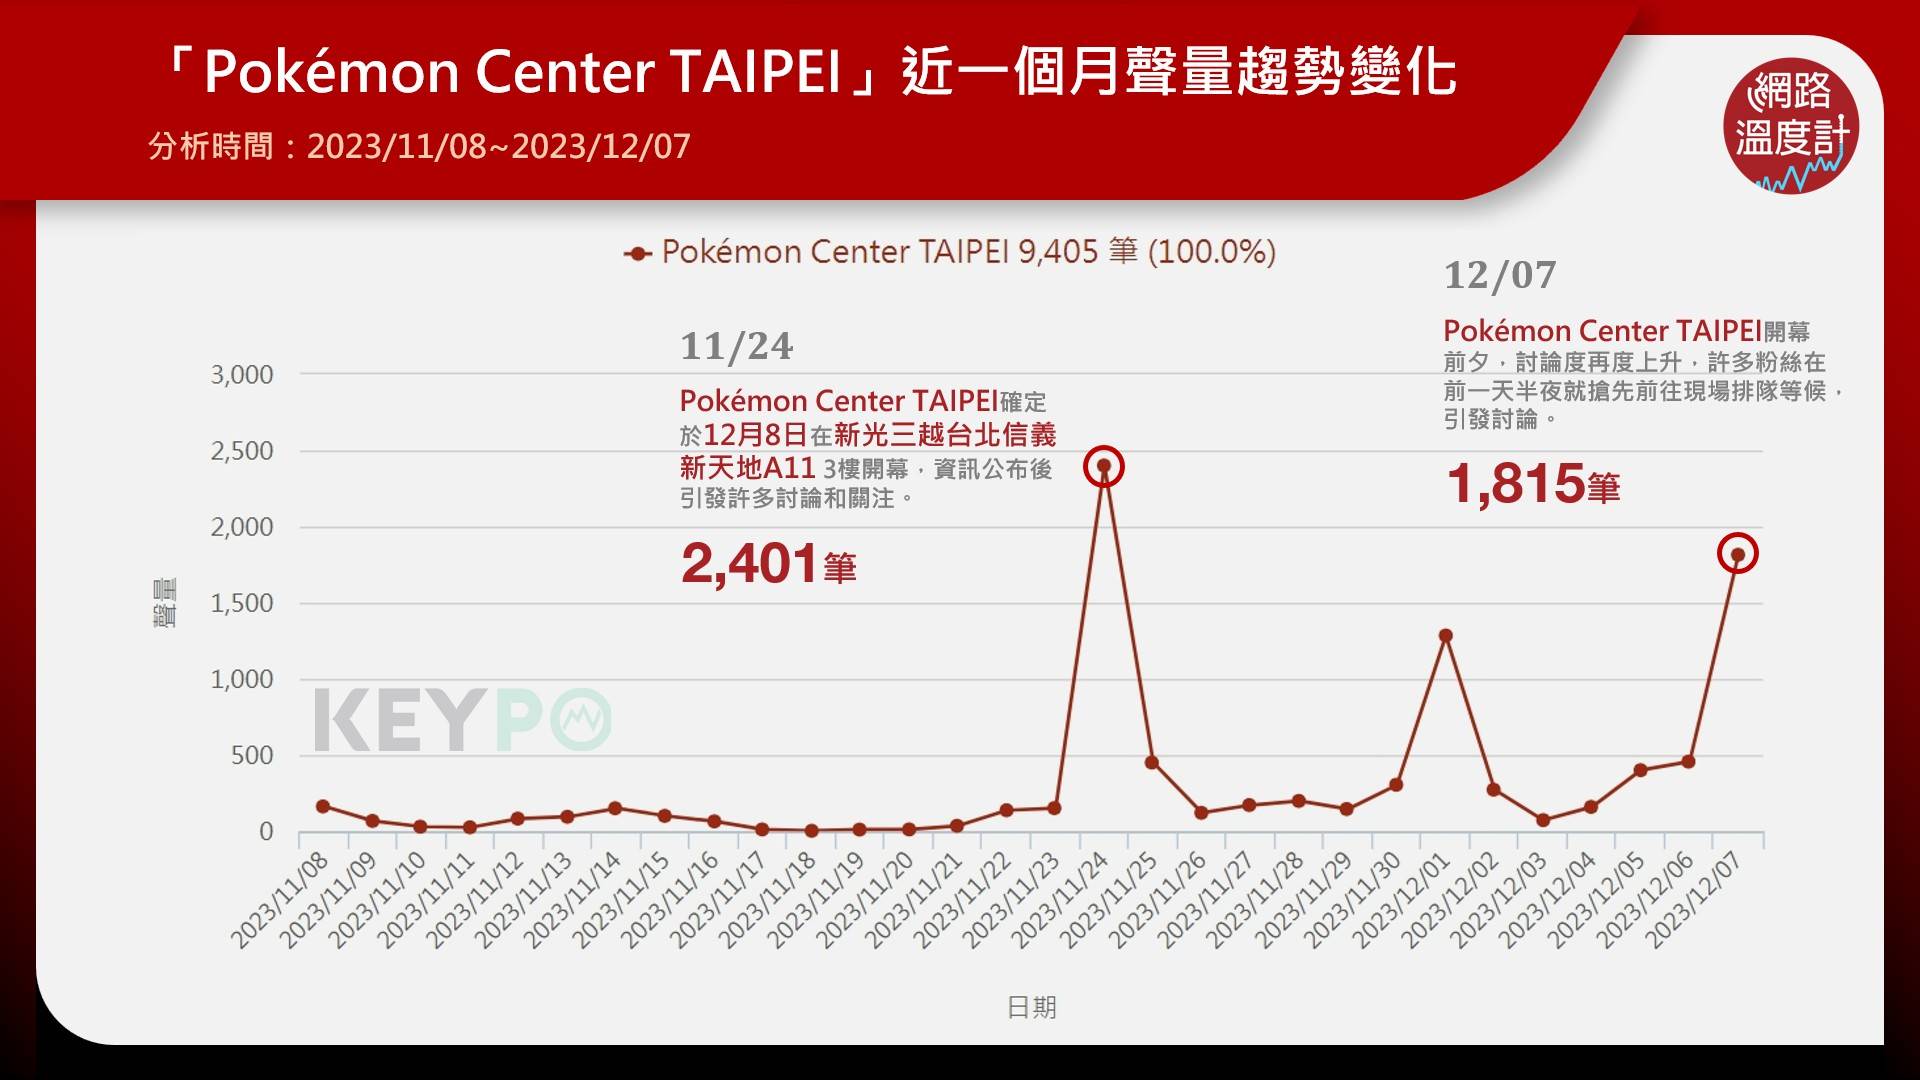 「Pokémon Center TAIPEI」近一個月聲量趨勢變化